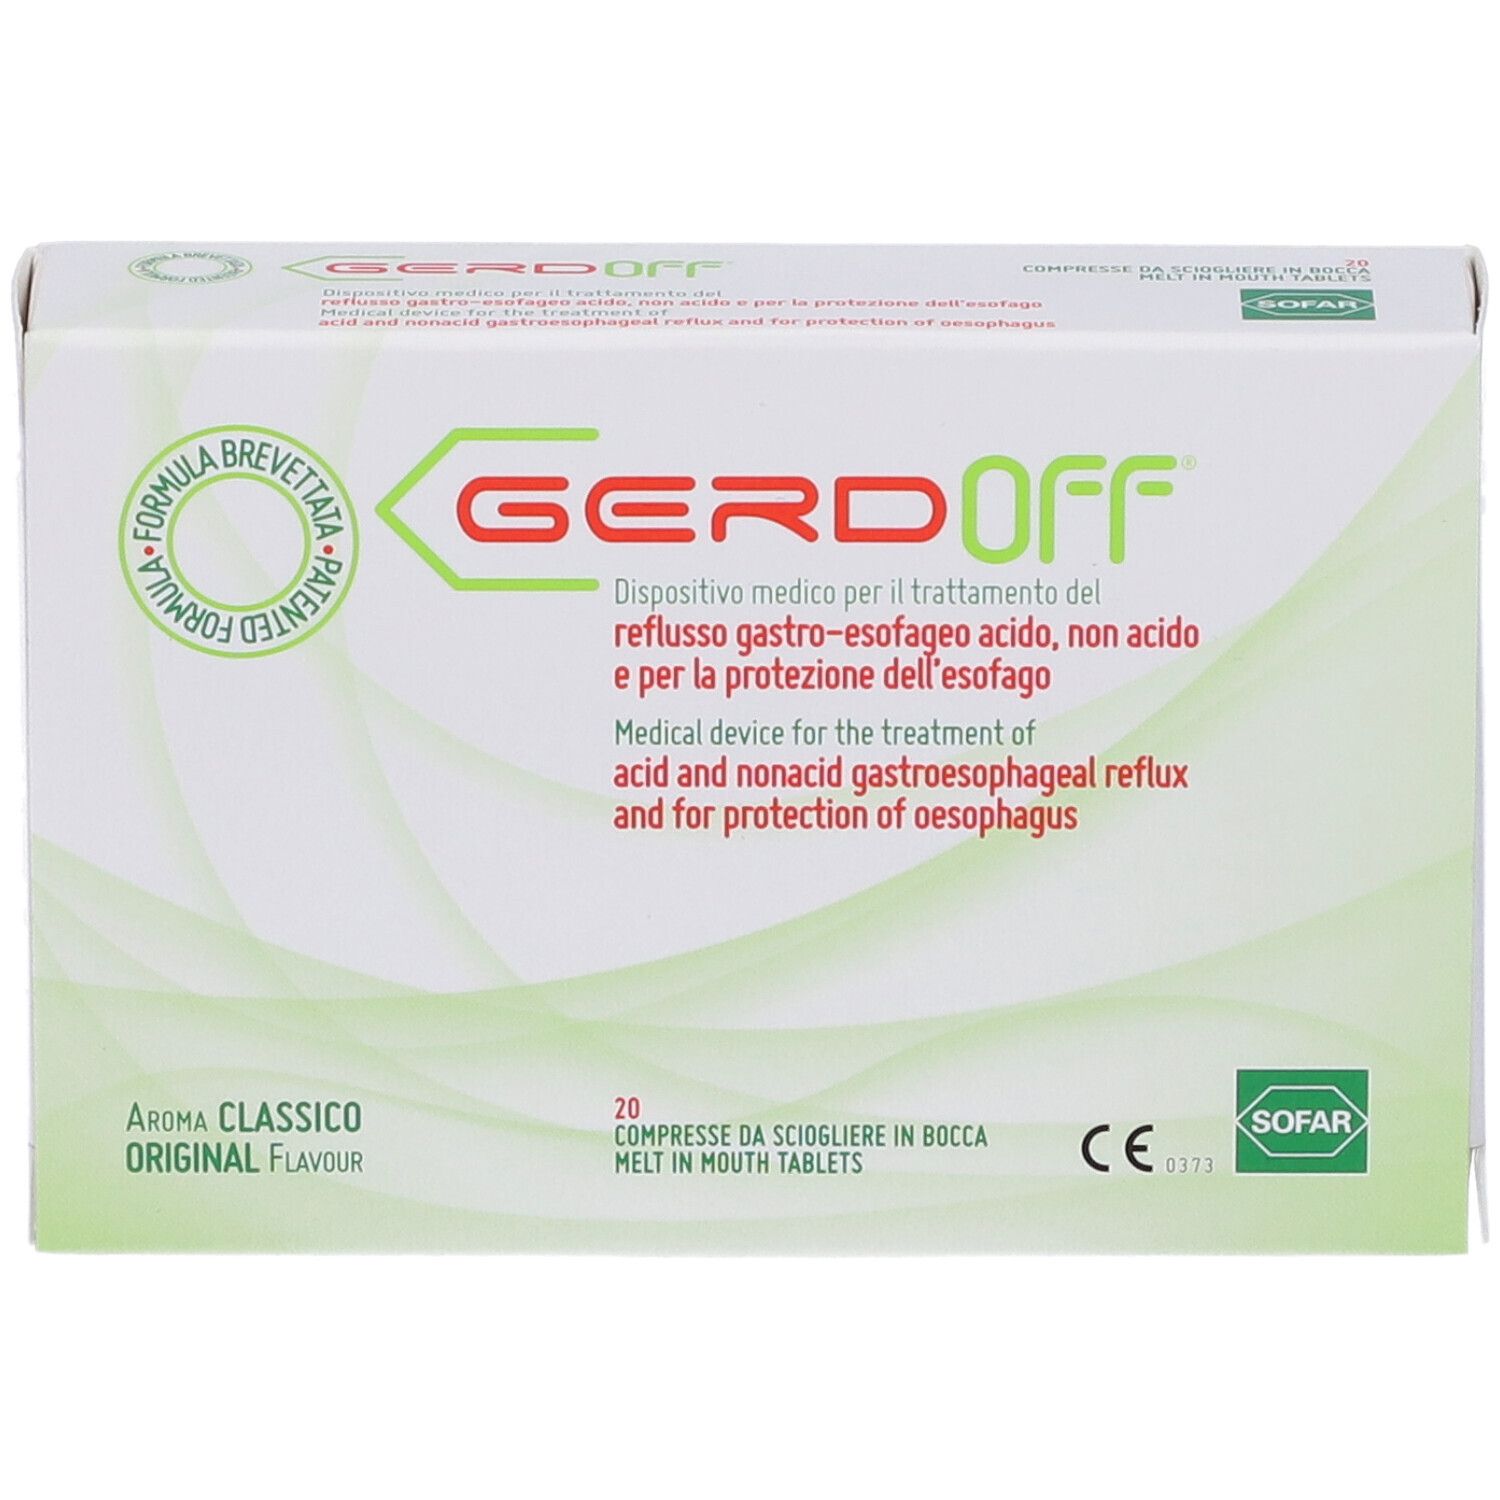 GerdOff®